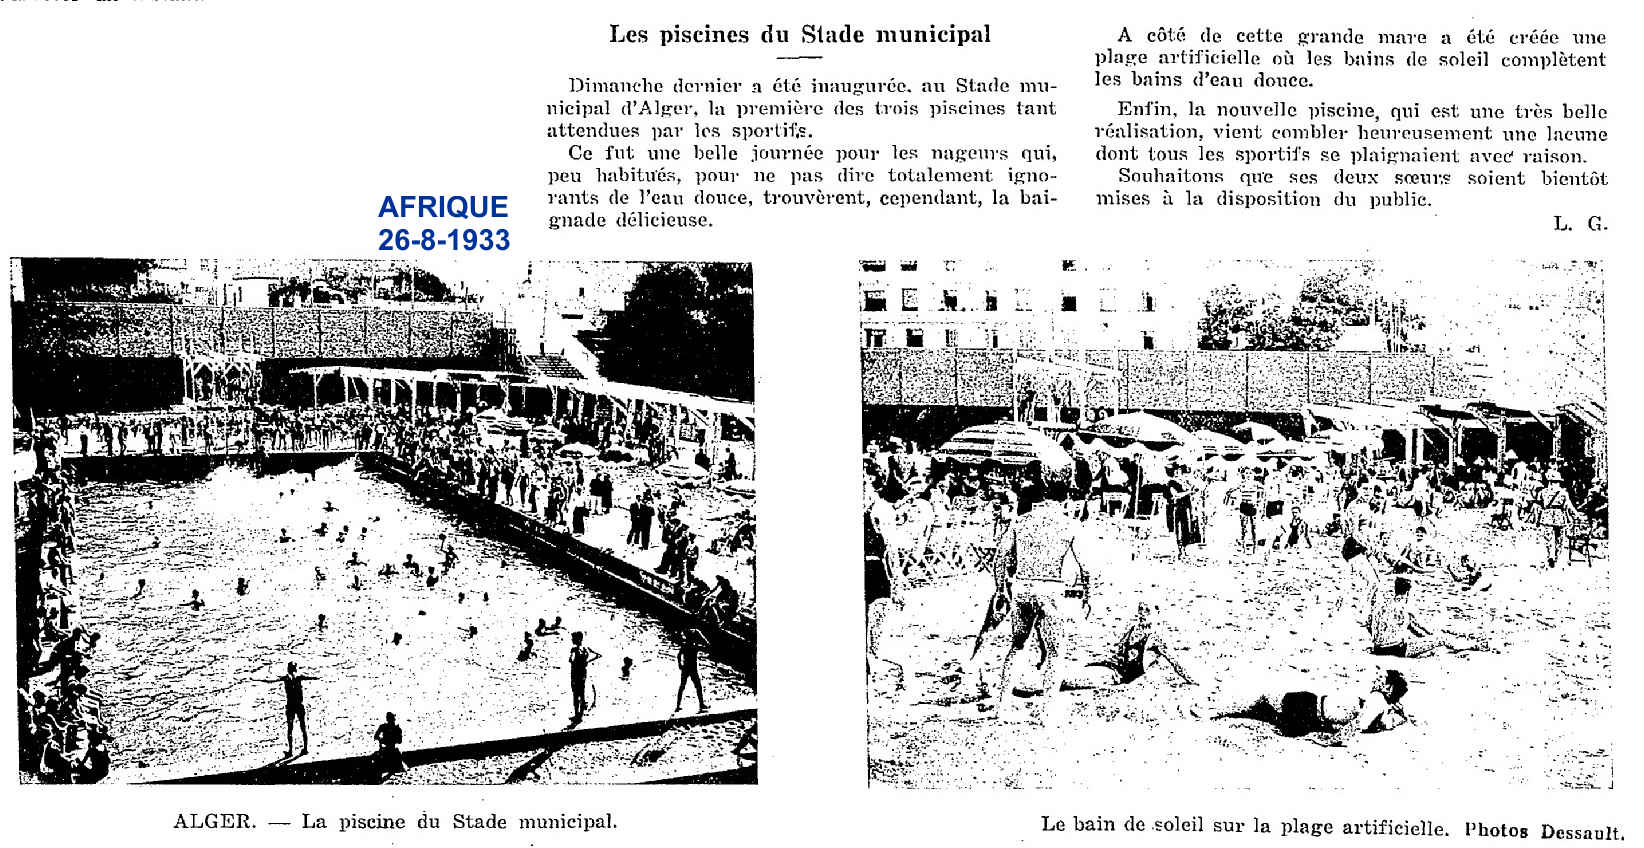 Inauguration , au Stade municipal d'Alger, de la première des trois piscines